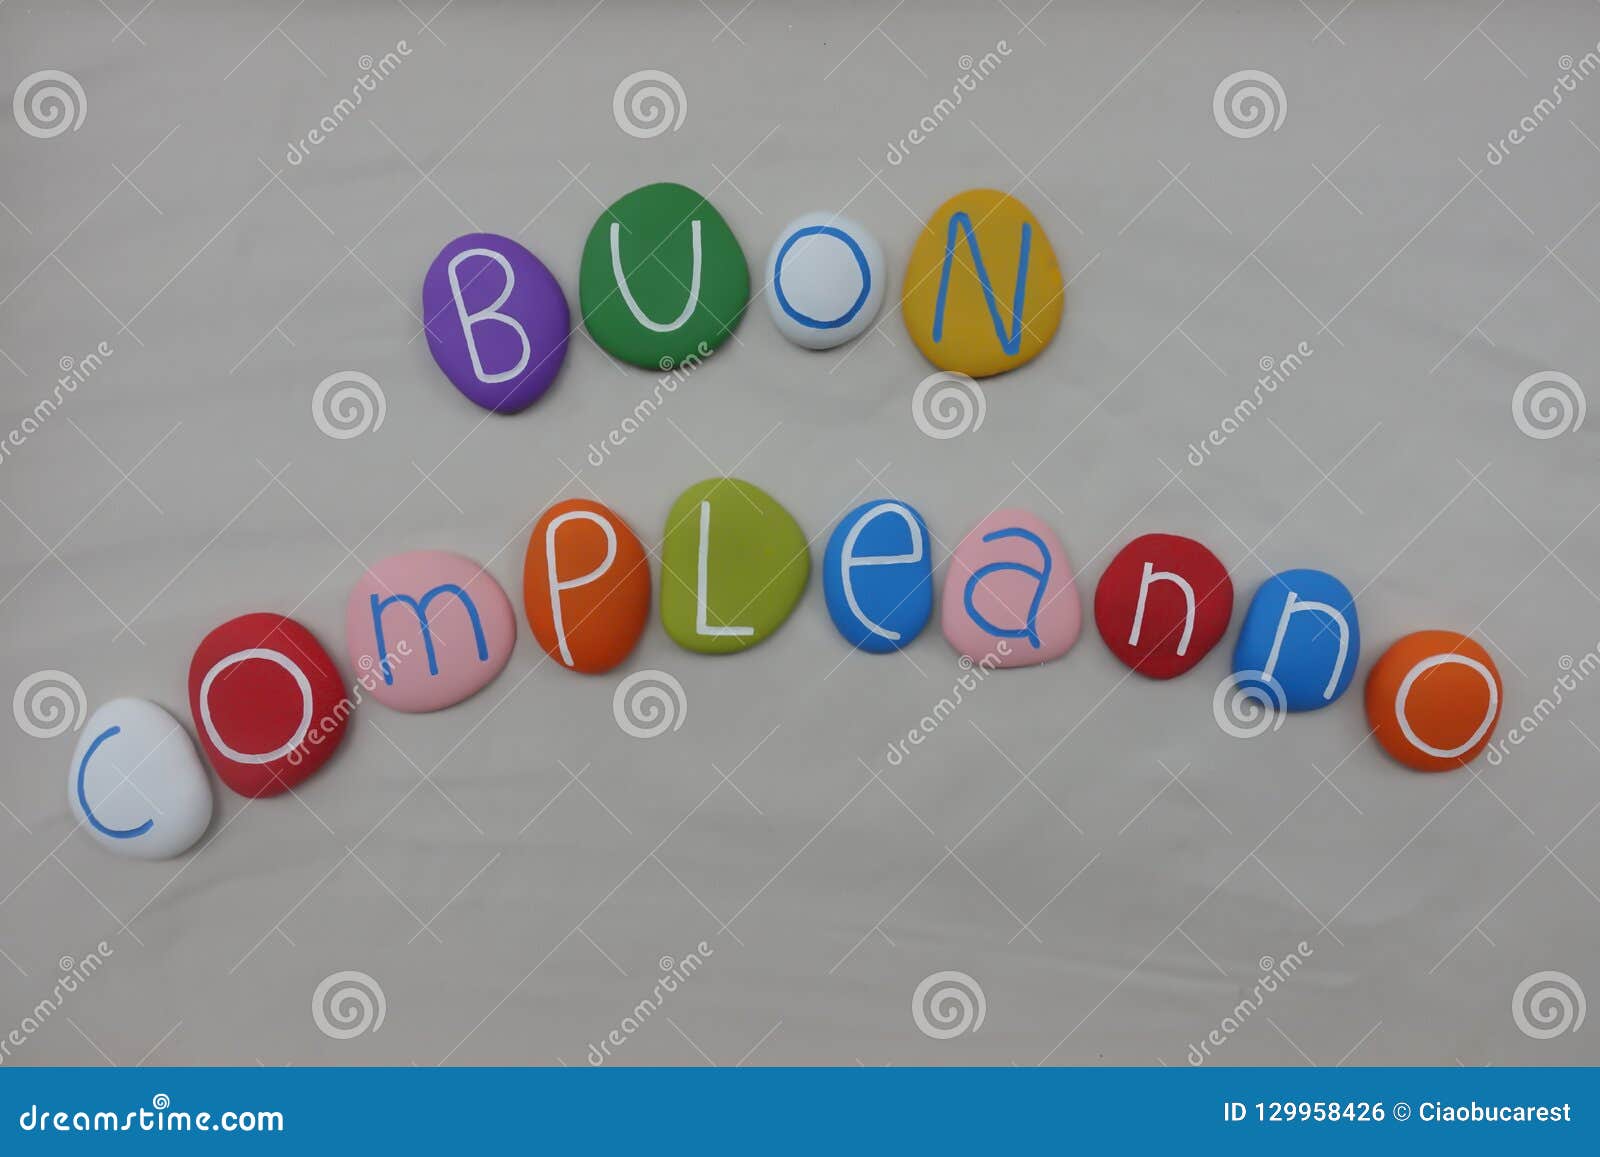 Buon Compleanno Joyeux Anniversaire Italien Avec Les Pierres Colorees Au Dessus Du Sable Blanc Photo Stock Image Du Joyeux Compleanno